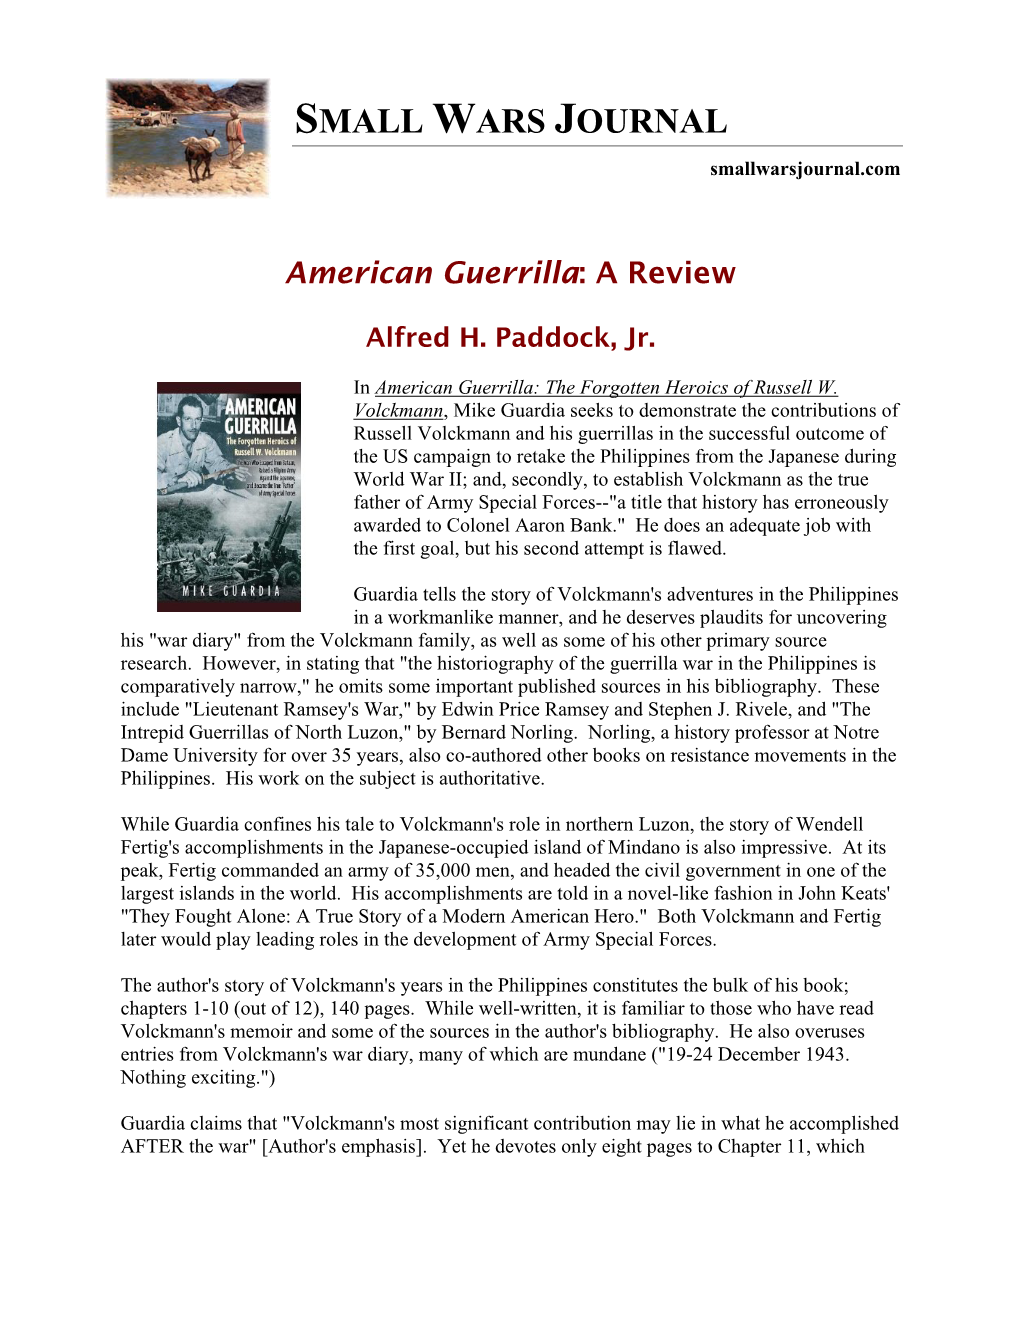 American Guerrilla: a Review